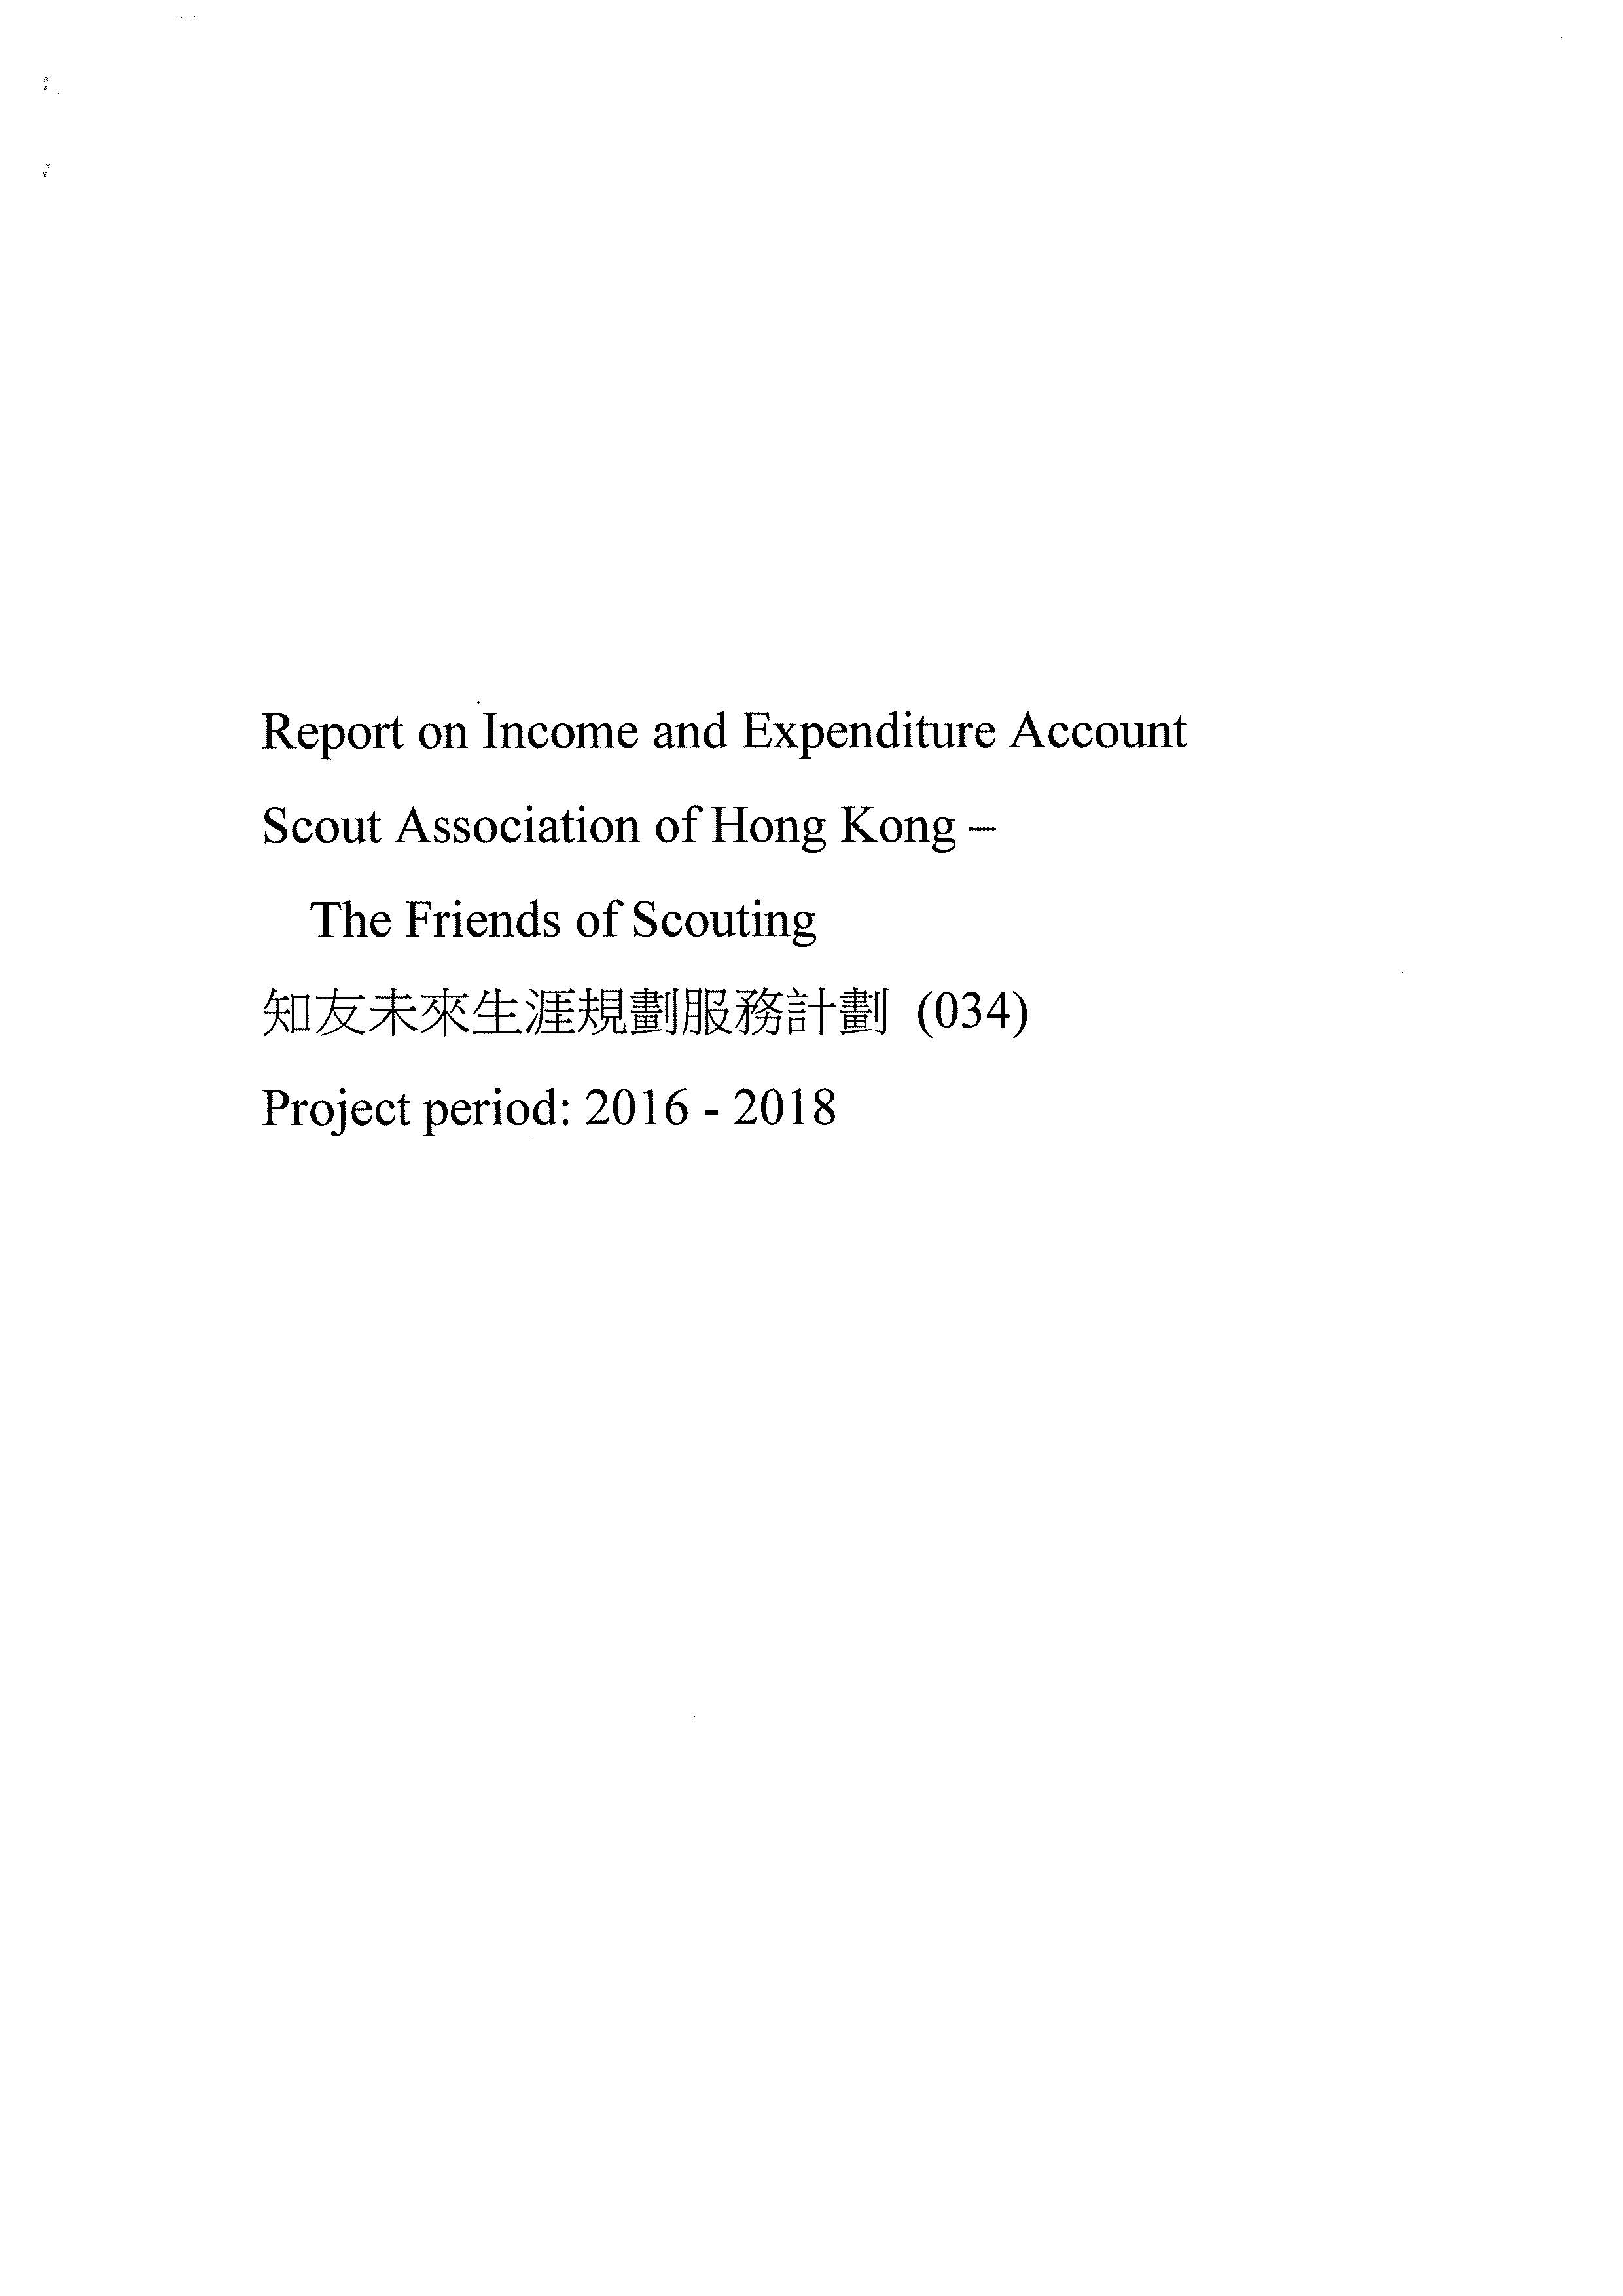 收支報告(2016-2018)